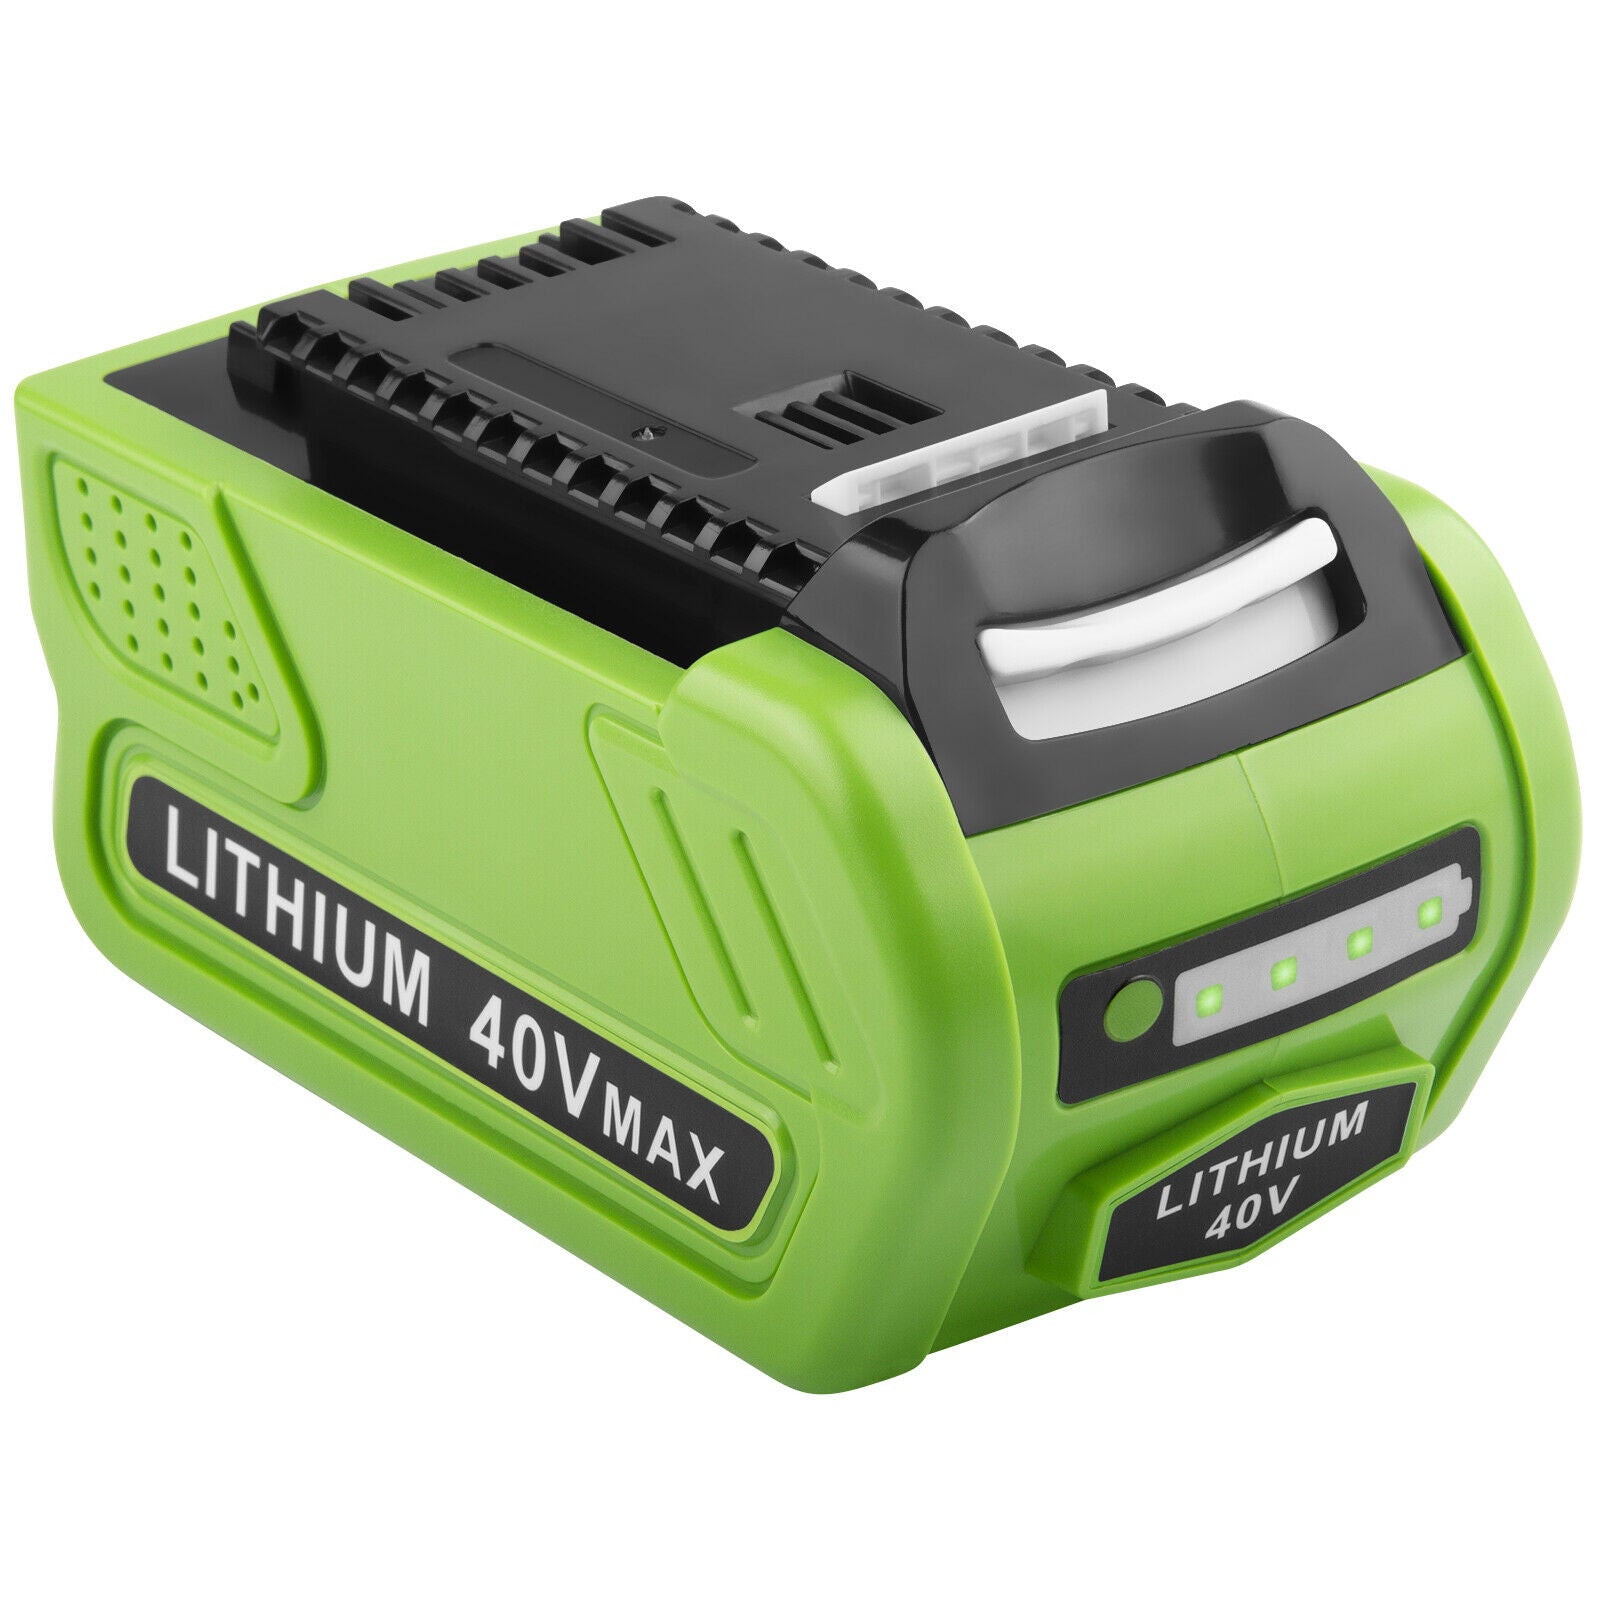 6.0Ah Battery for GreenWorks 40-Volt G-MAX 29472 29462 2901319